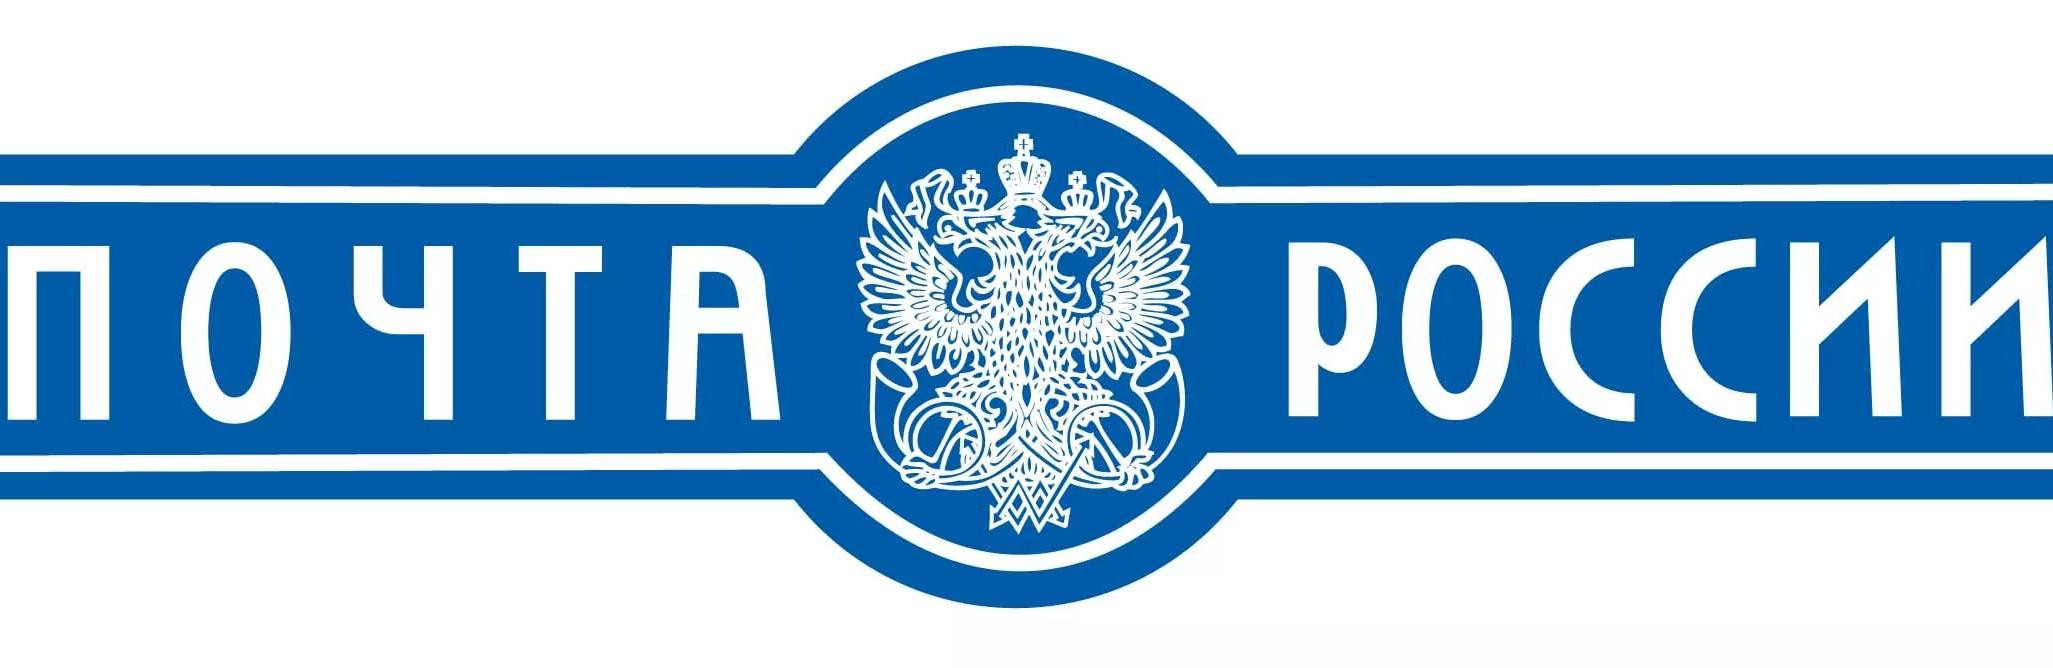 Почта России эмблема